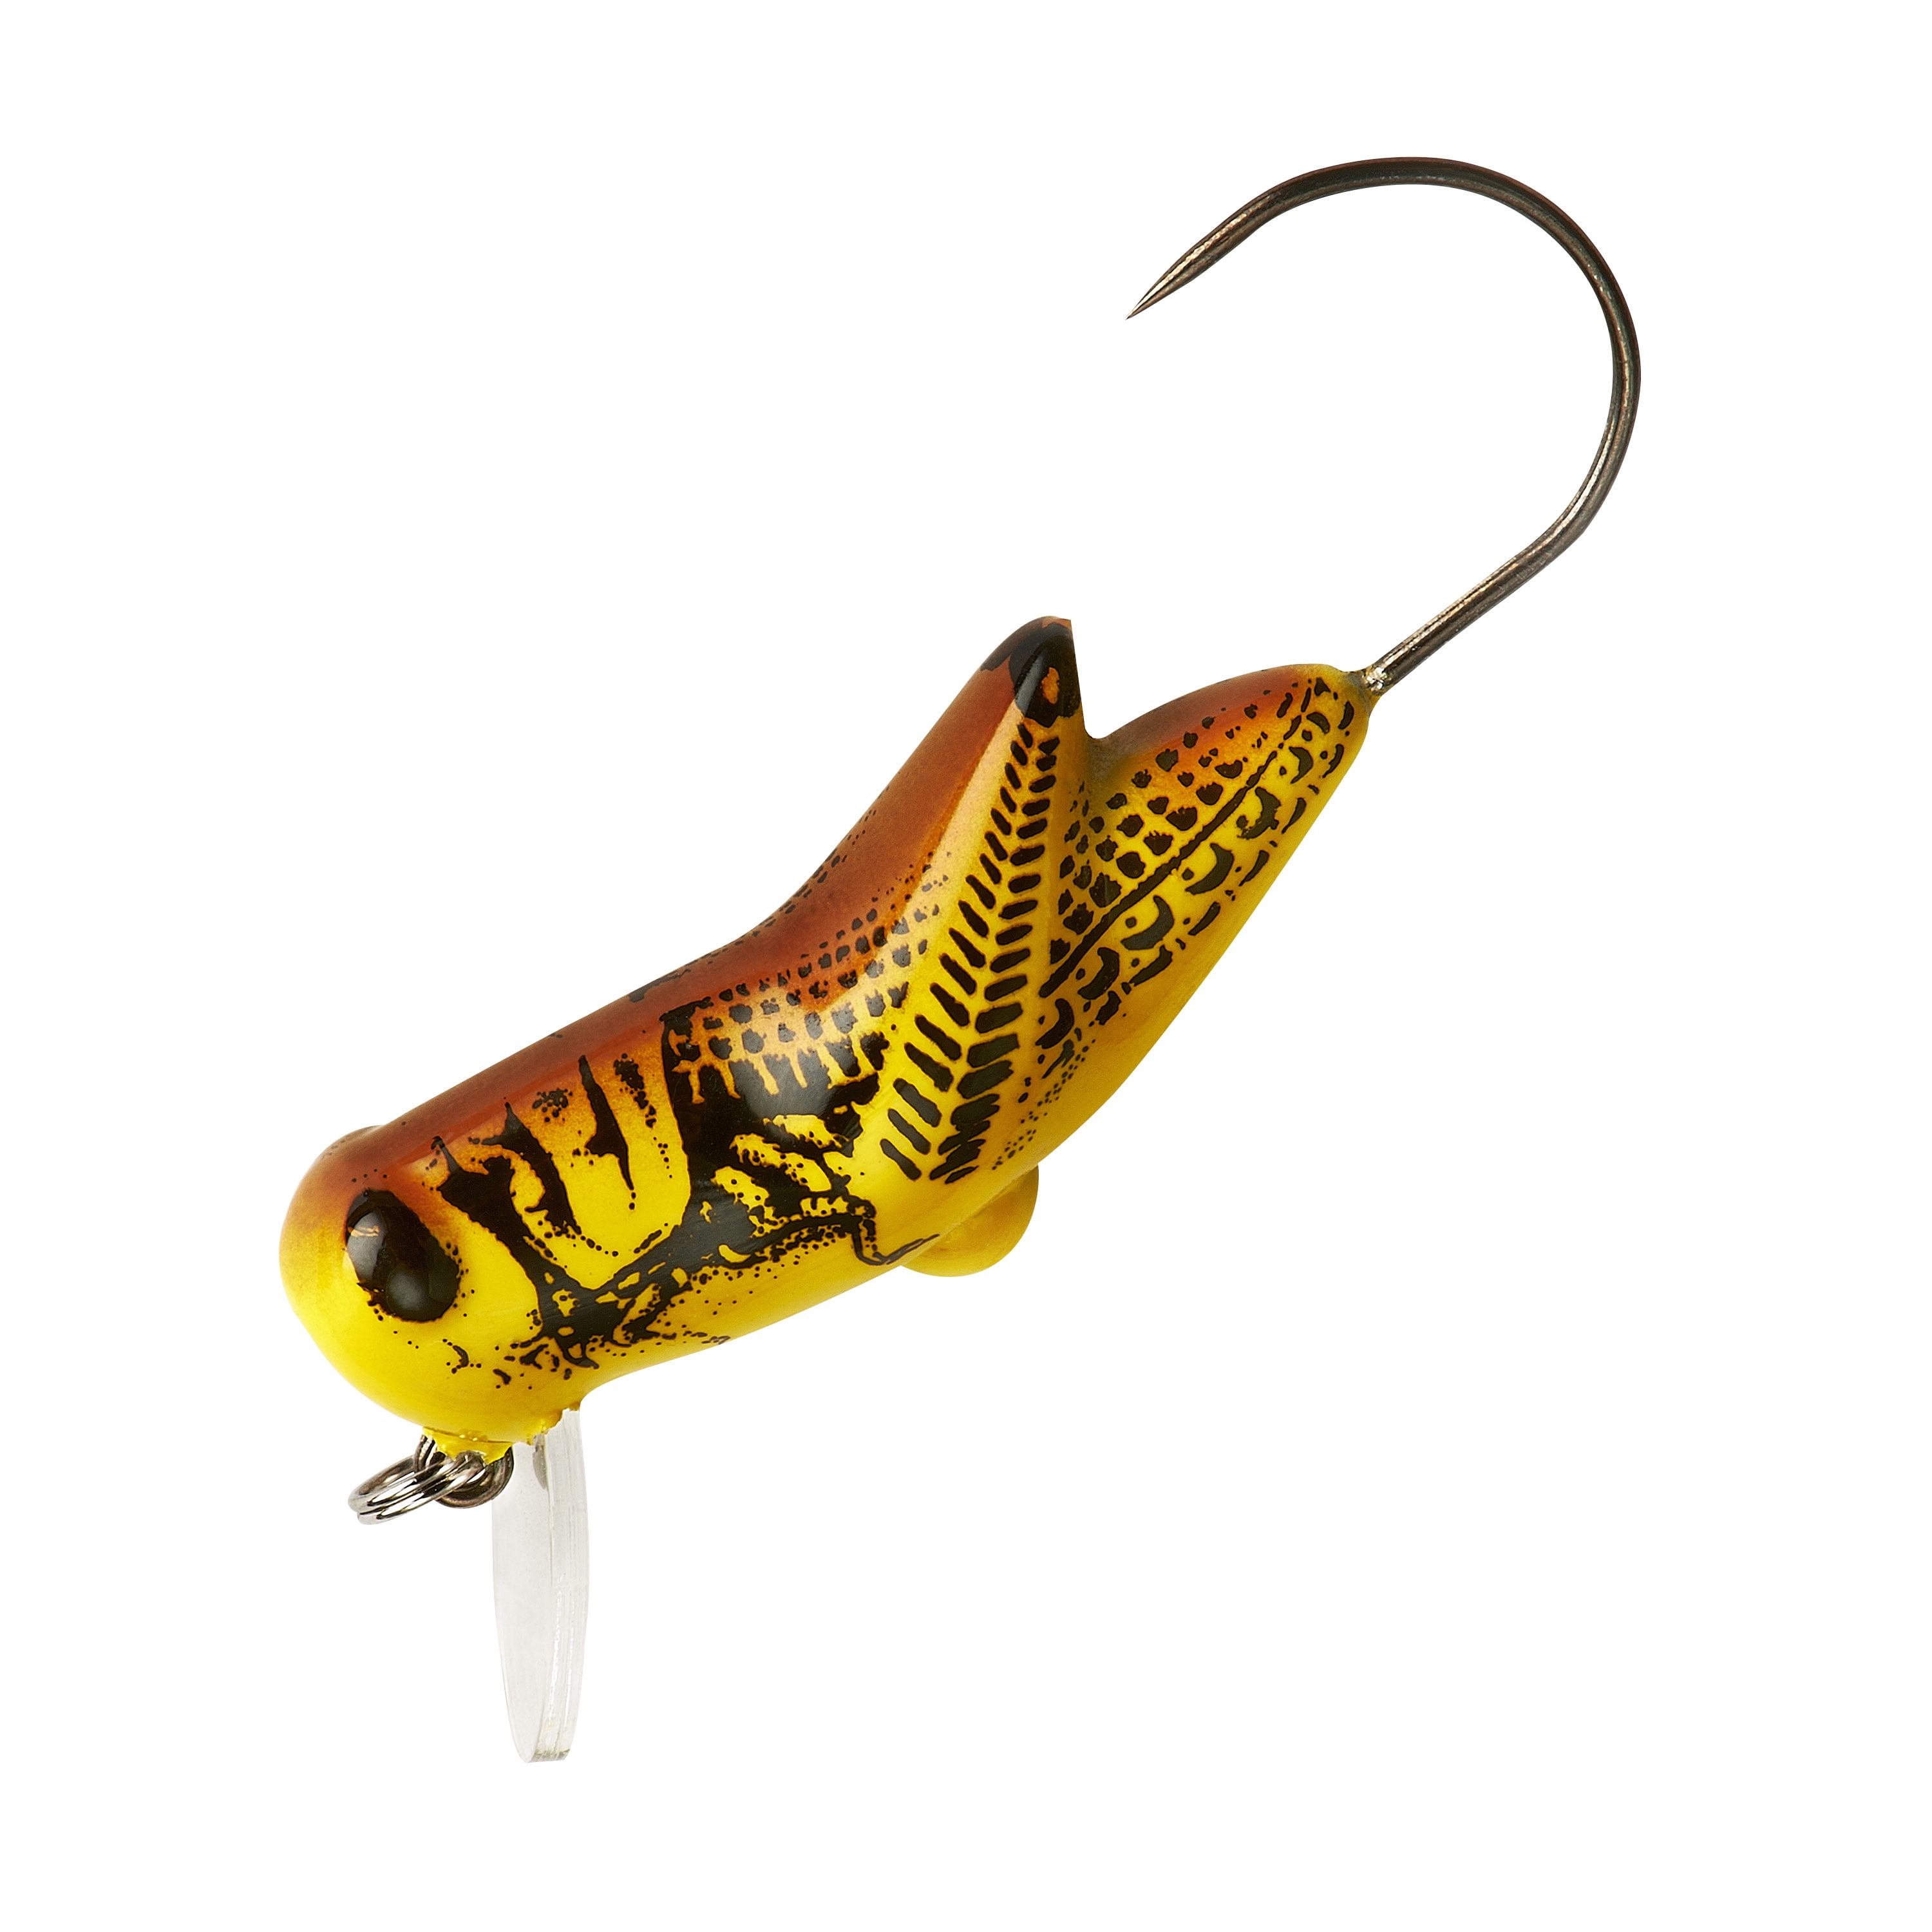 Rebel Crickhopper Fishing Lure - Yellow Grasshopper